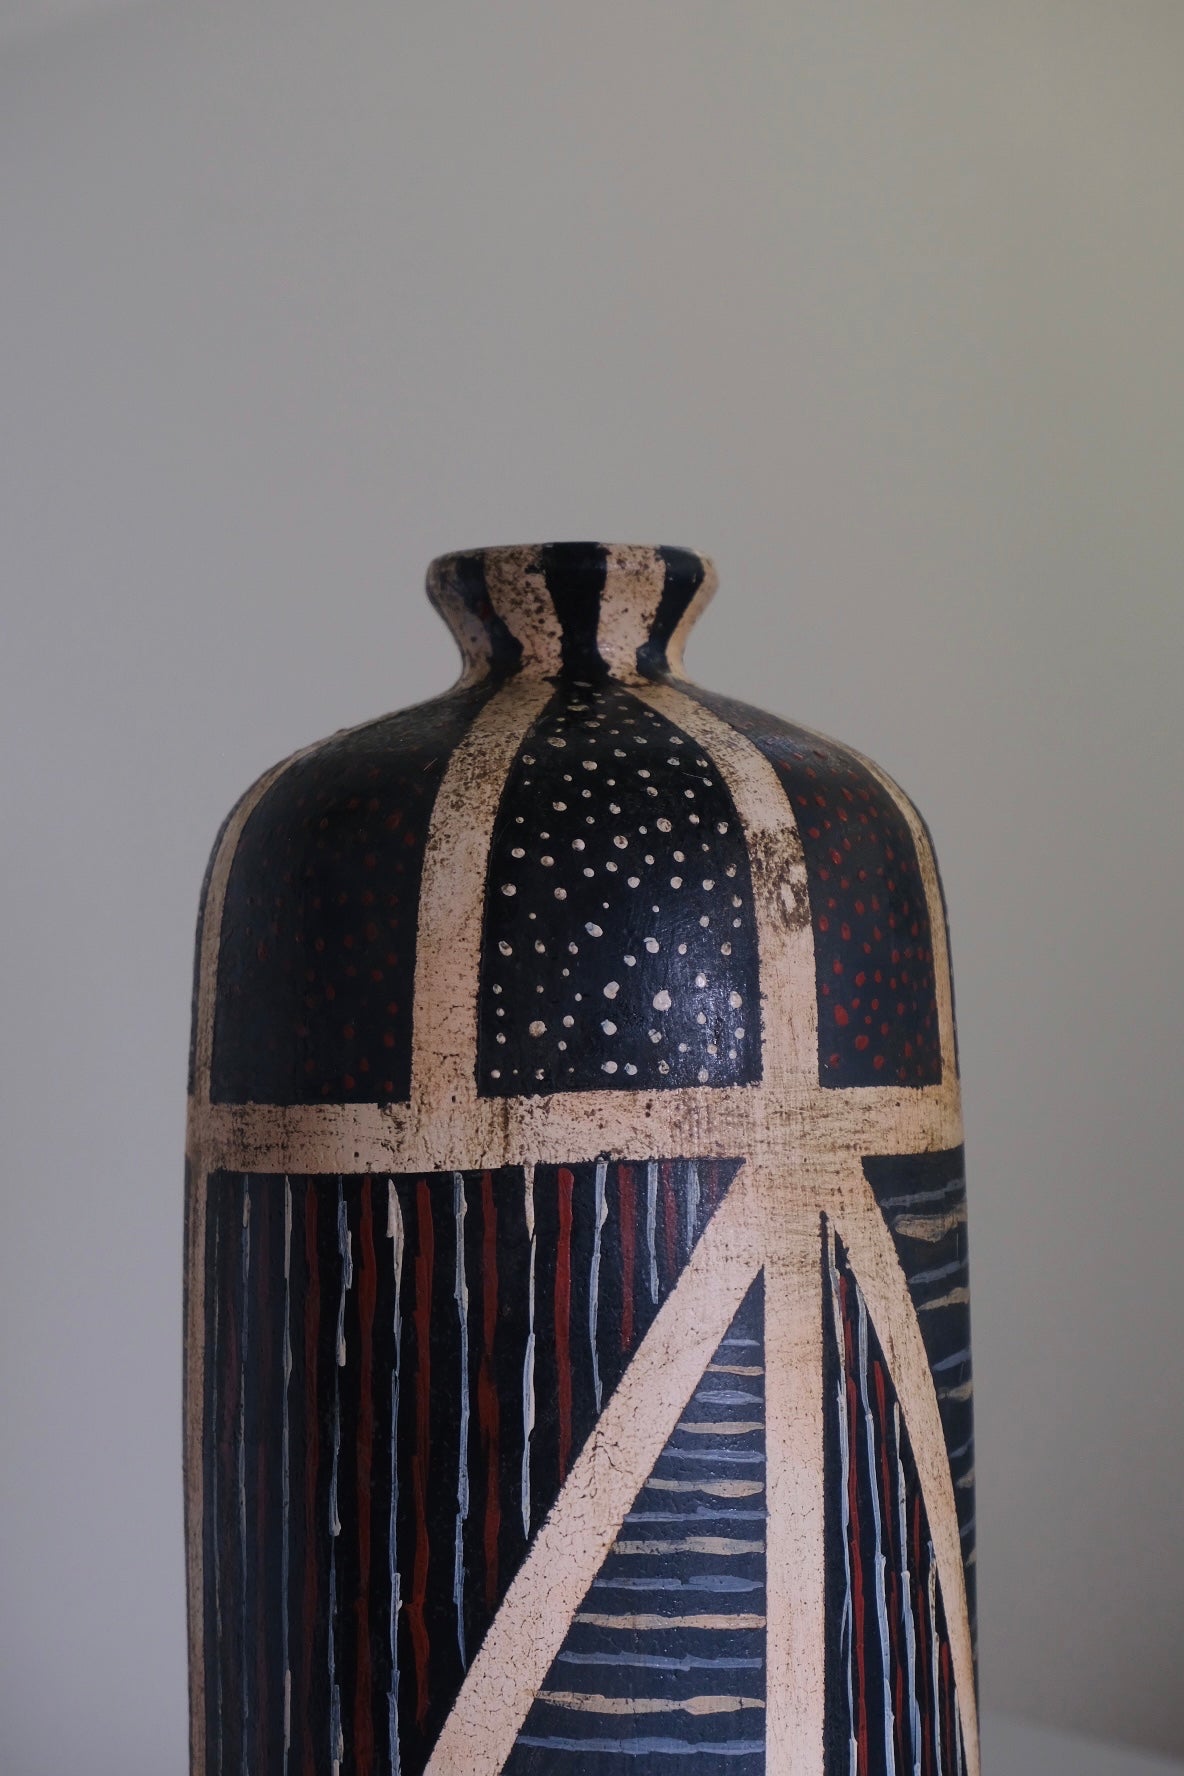 Hand Painted Tribal Vase (Amerikkka version)